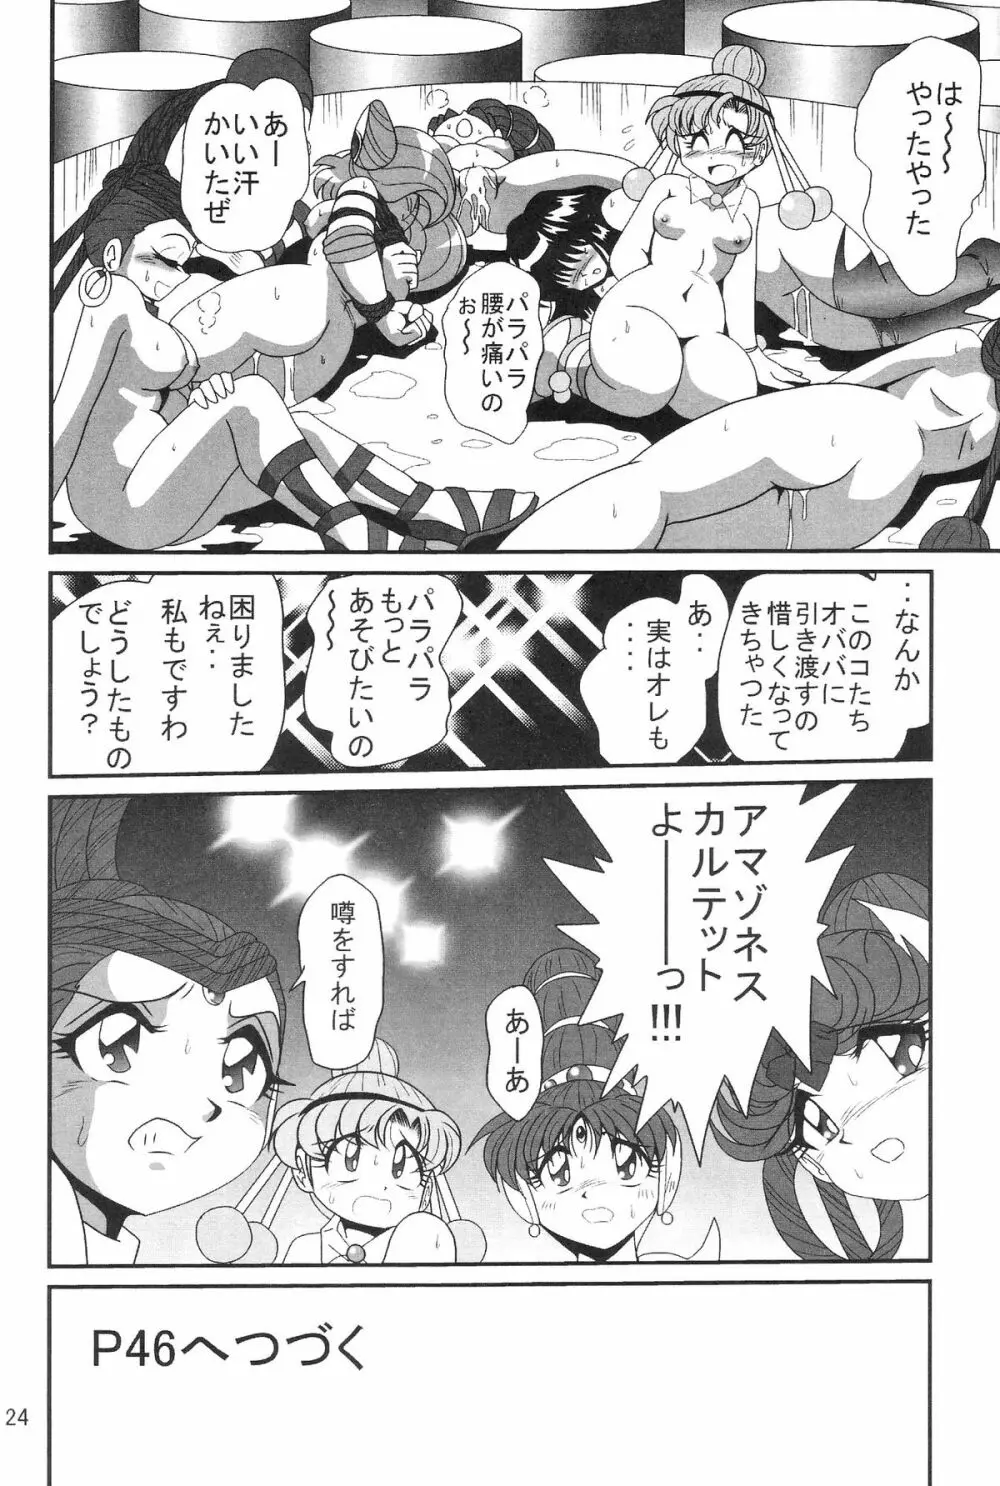 サイレント・サターン SS vol.8 24ページ